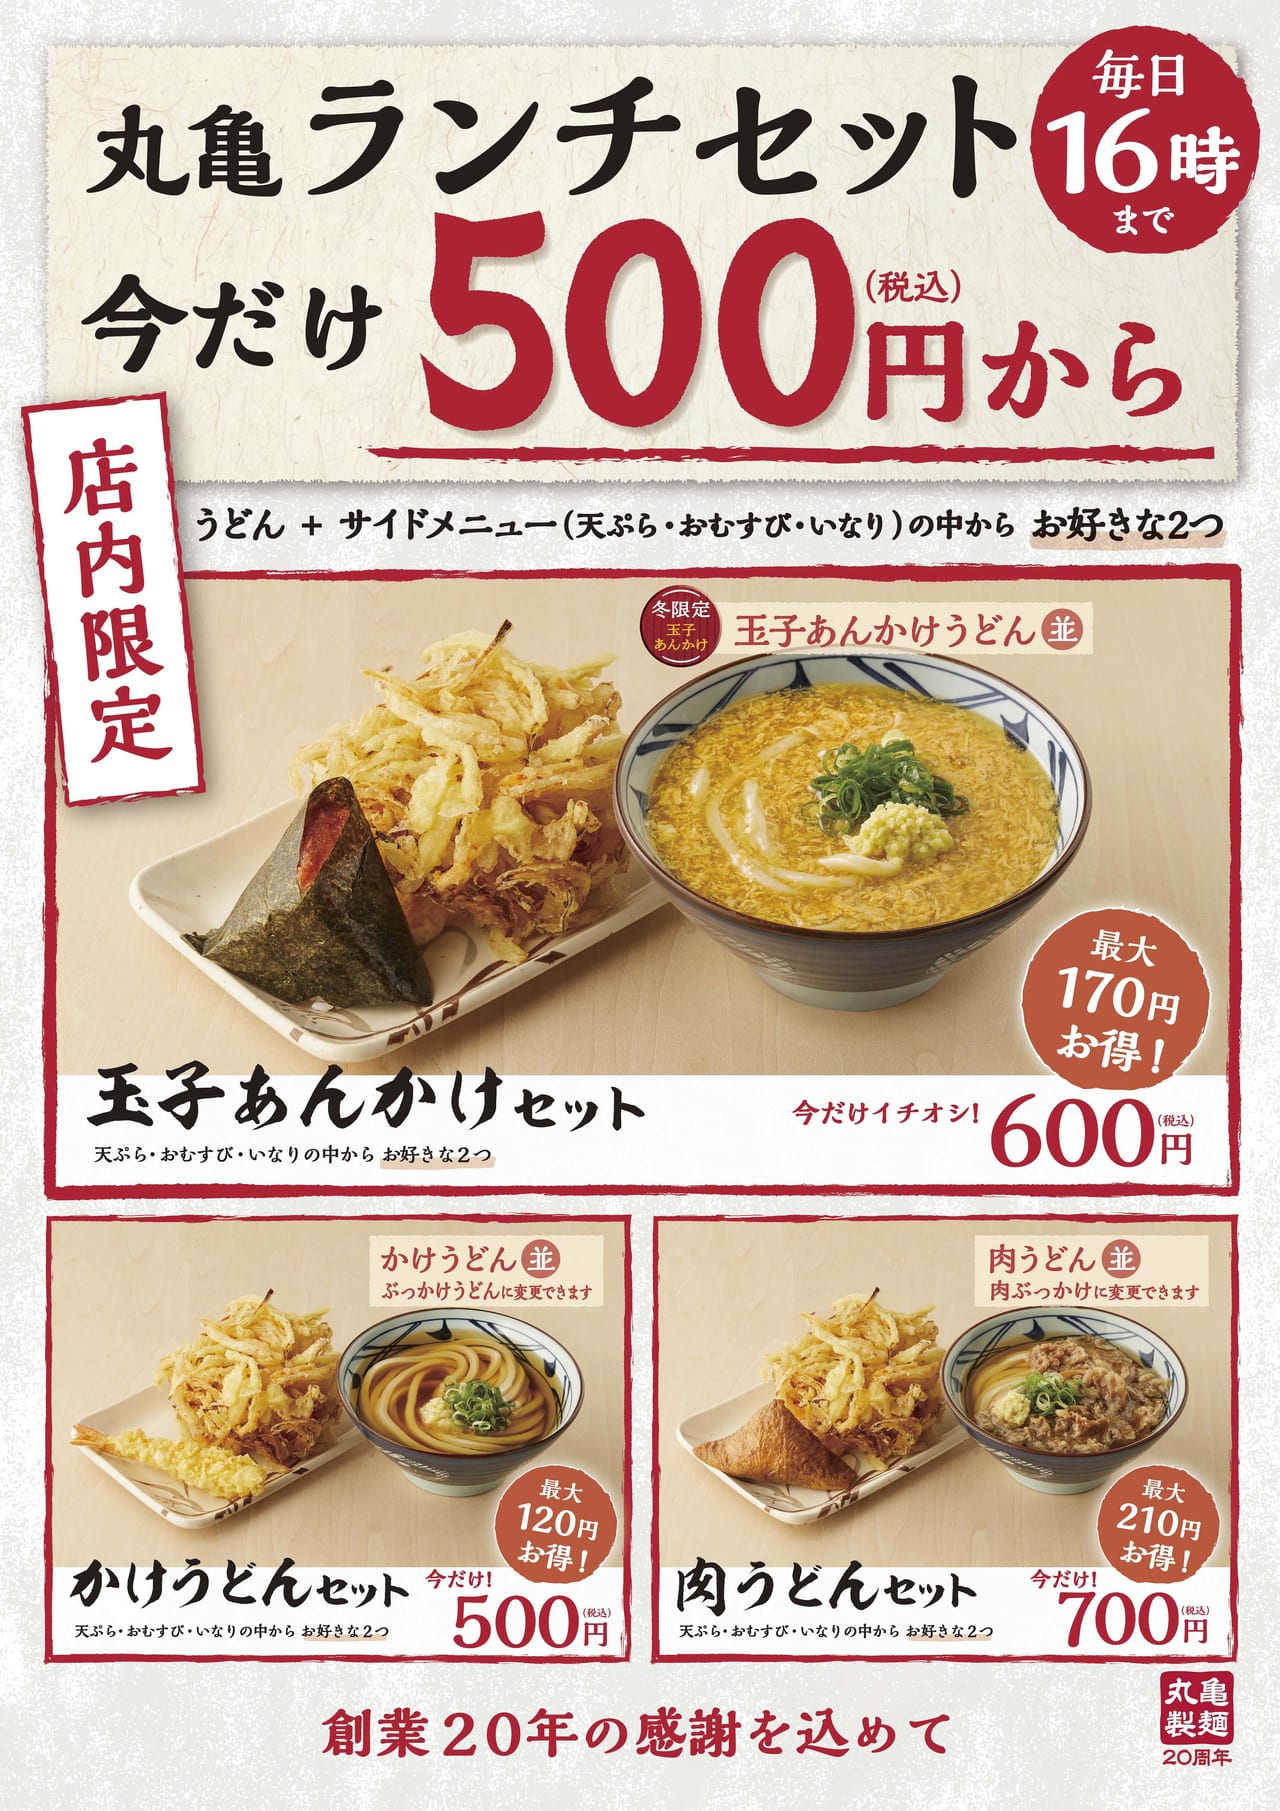 【松本市】創業20年を迎える丸亀製麺がお得な丸亀ランチセット ...